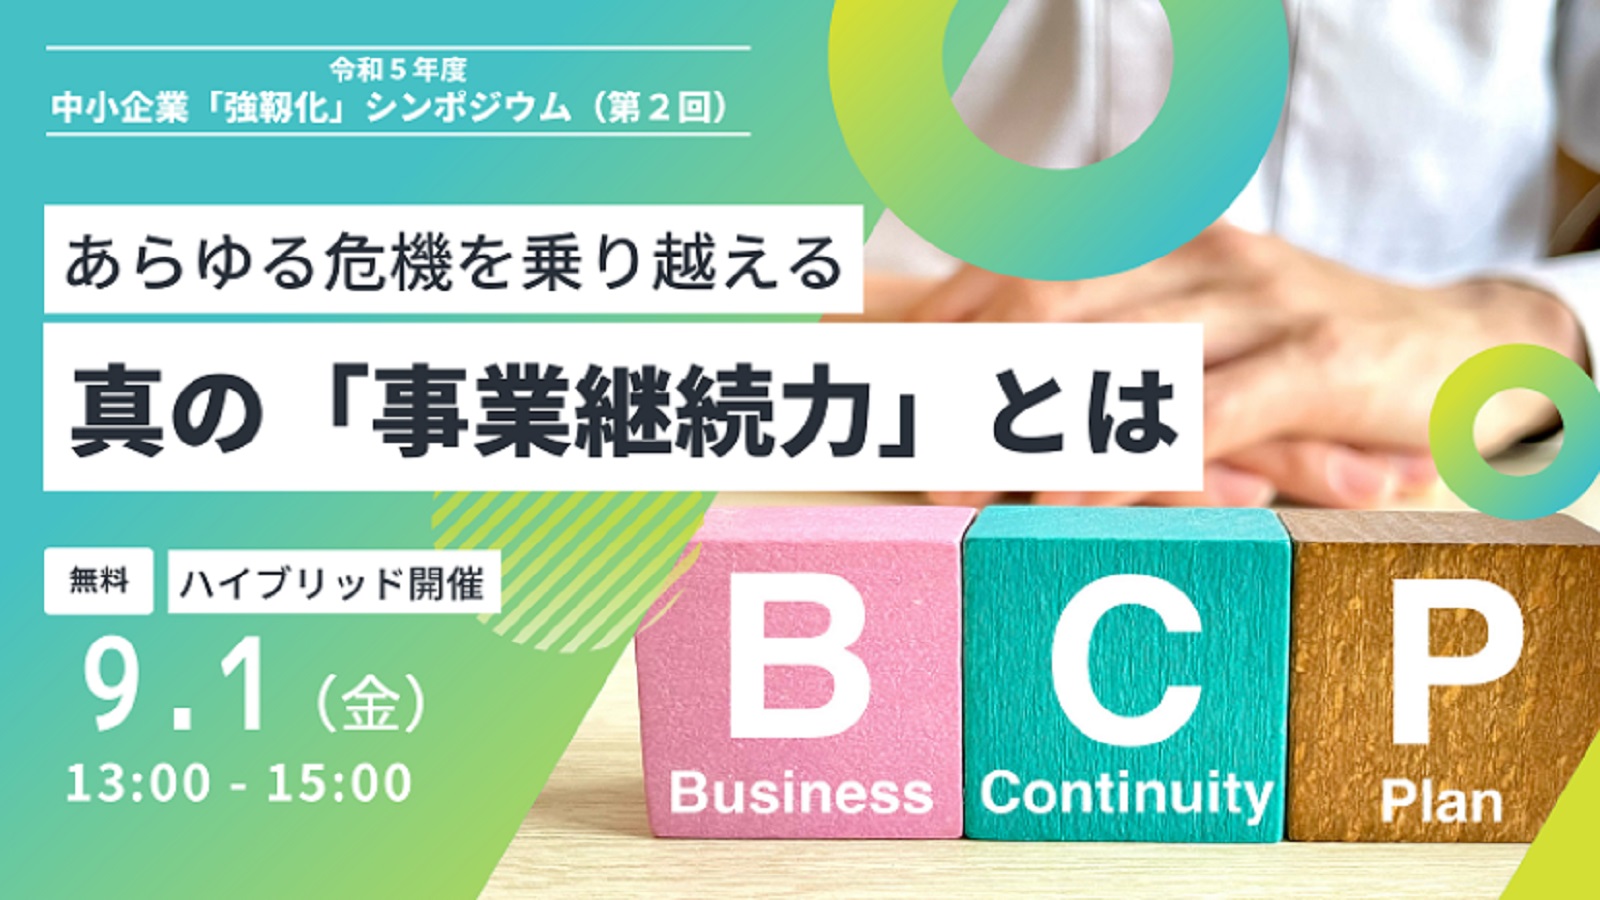 日経BP イベント＆セミナー